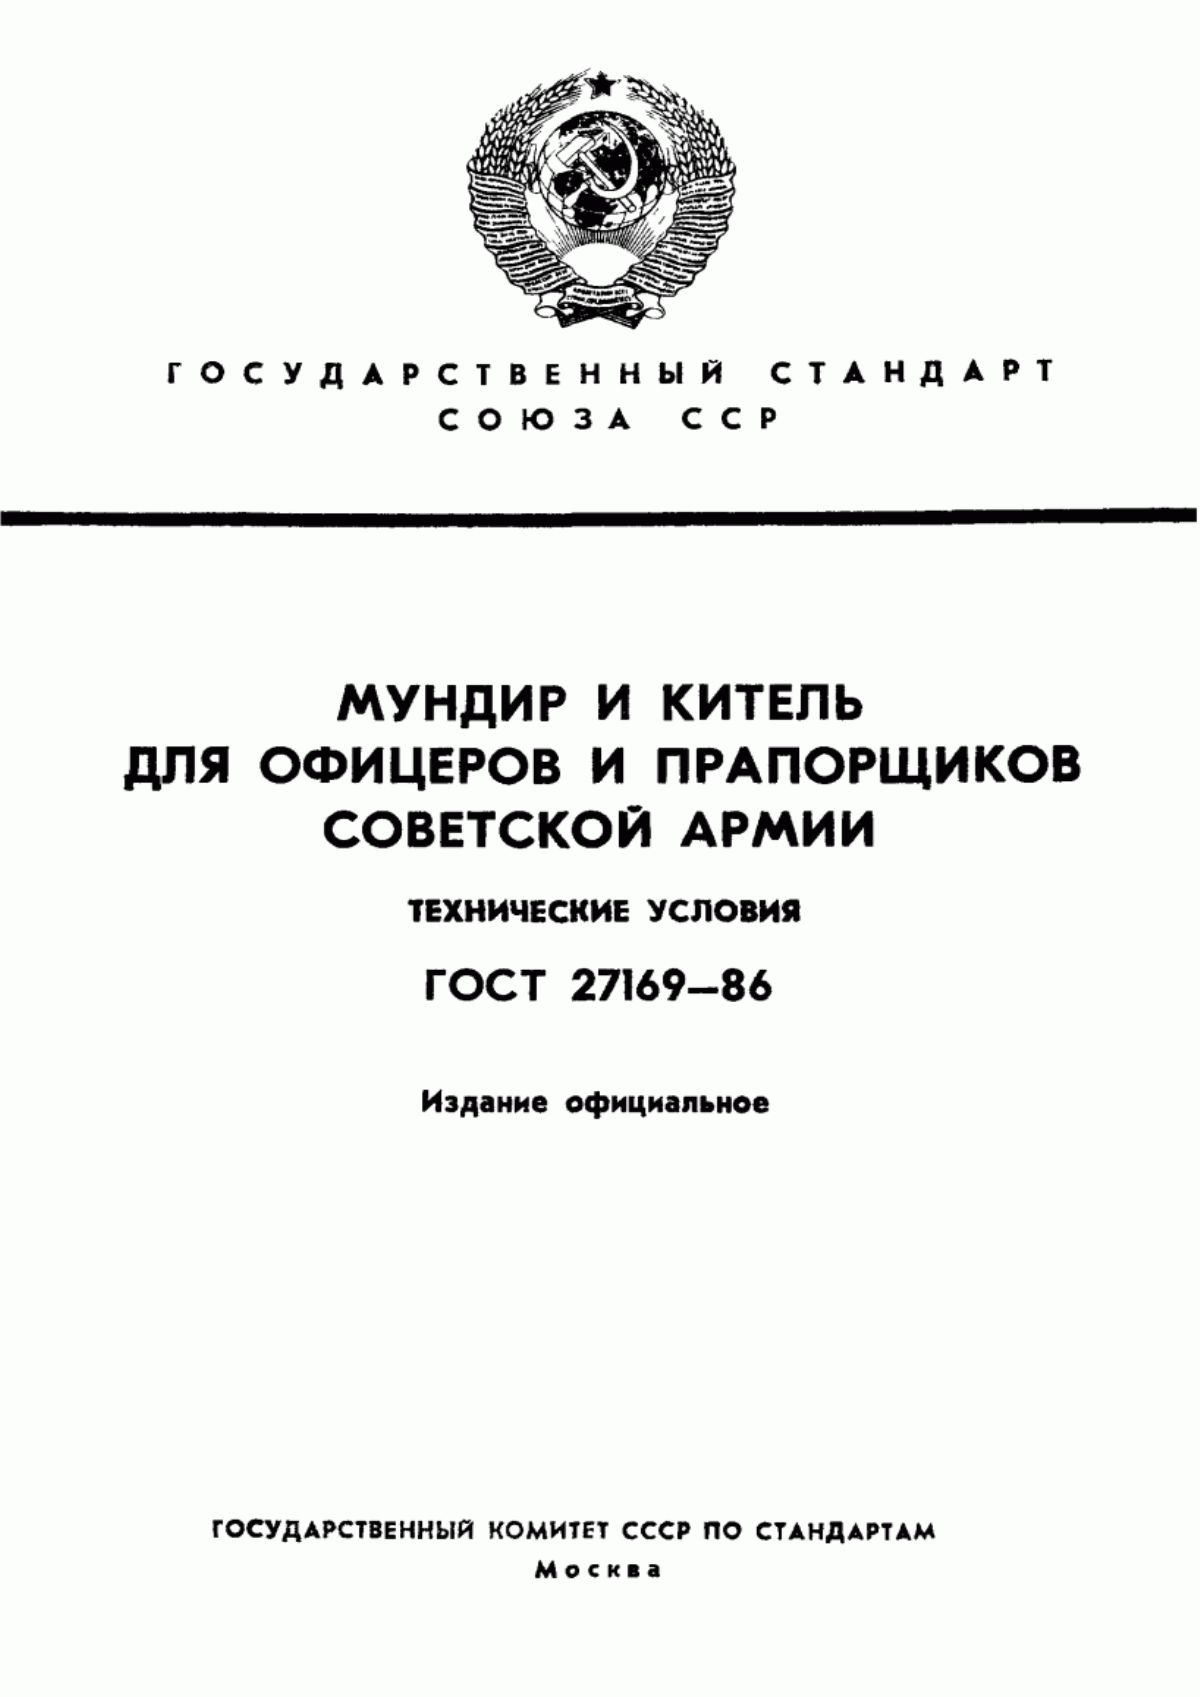 ГОСТ 27169-86 Мундир и китель для офицеров и прапорщиков Советской Армии. Технические условия